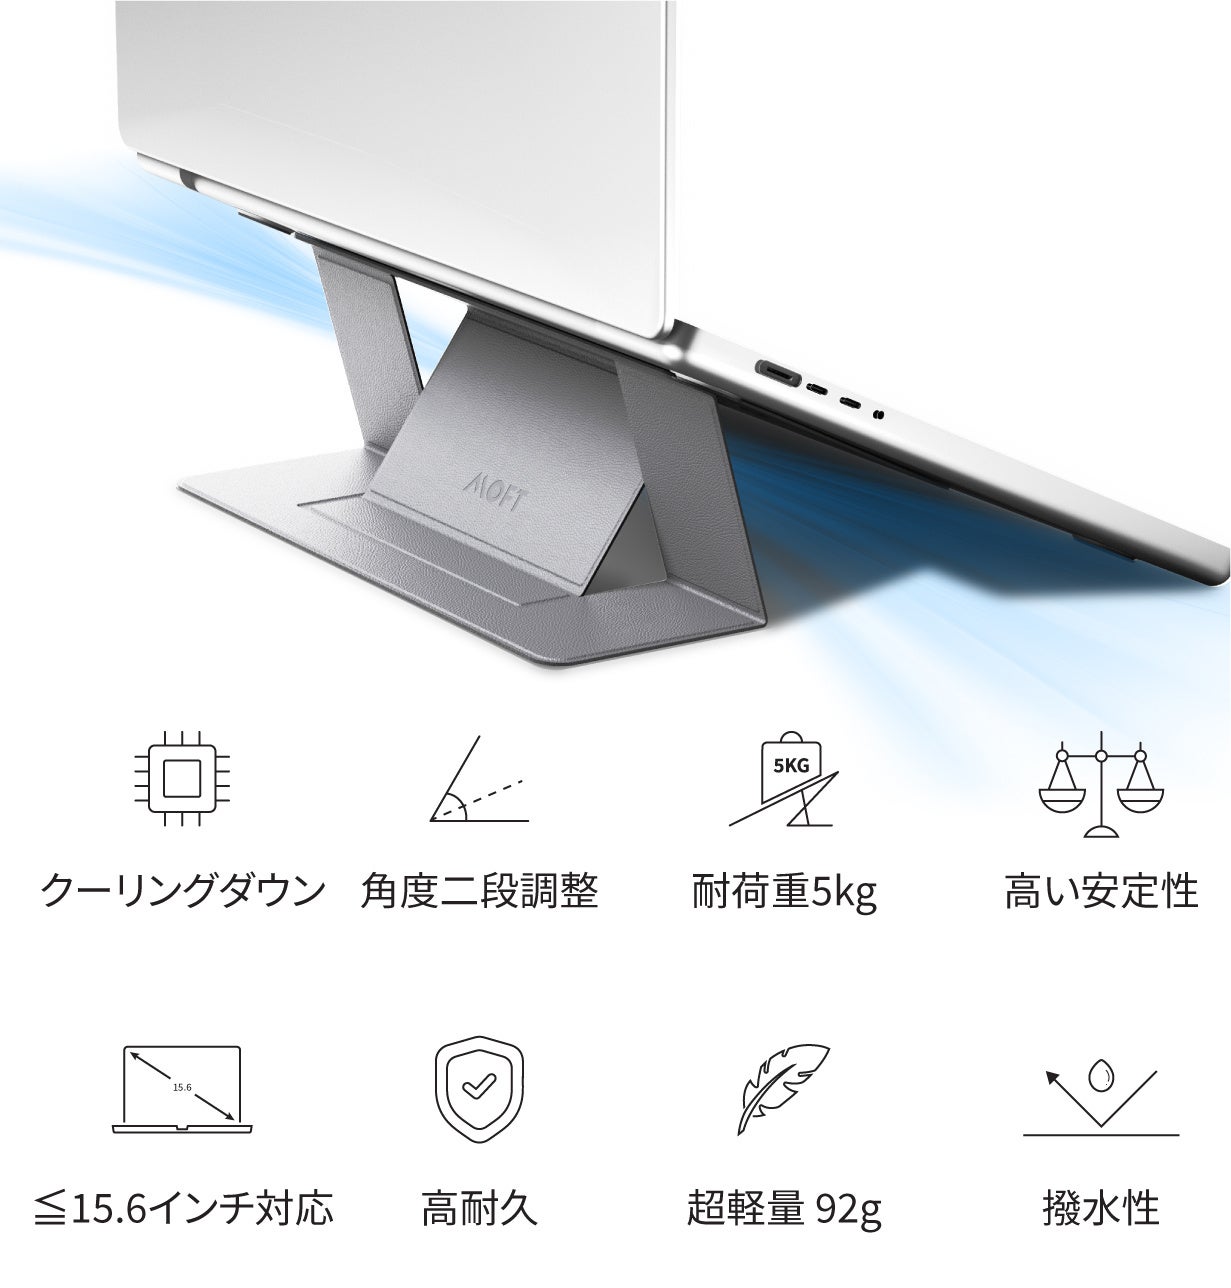 MOFTシリーズの原点にして、頂点。「MOFT ノートPCスタンド」から、貼り付けるだけで放熱効果を発揮する「MOFT Cooling Stand」が、Makuakeから日本初上陸。のサブ画像2